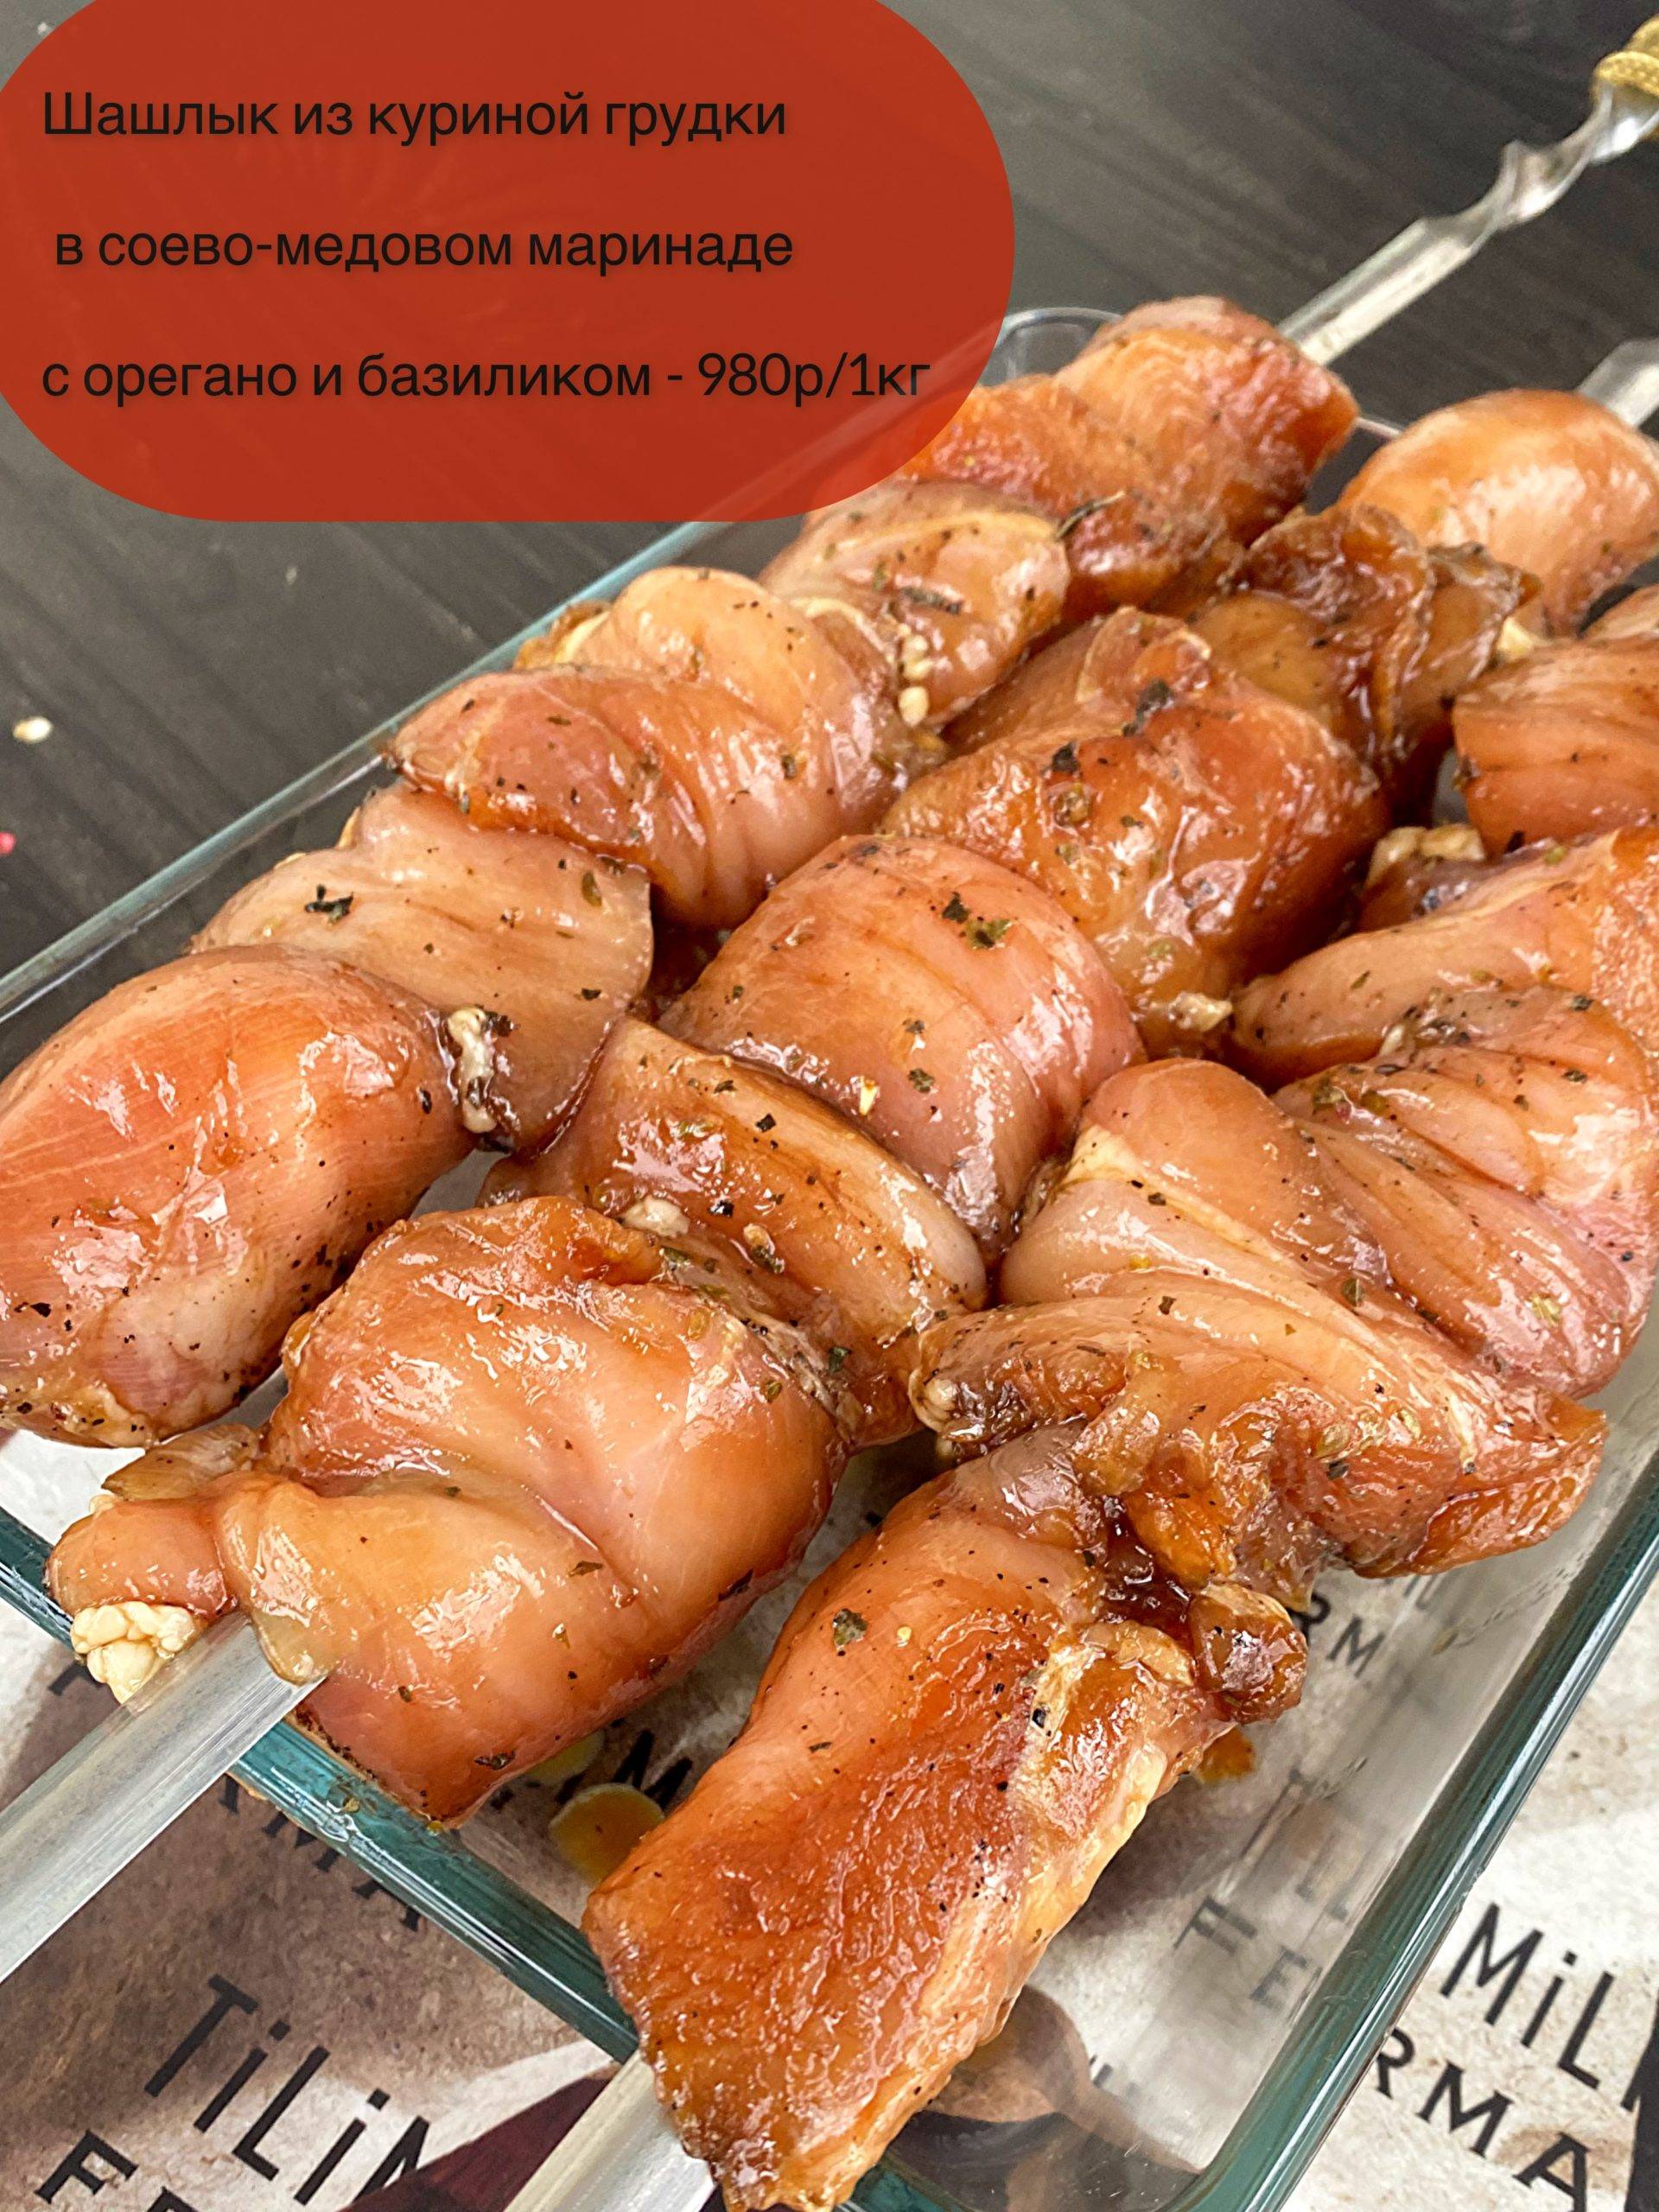 Шашлык из куриной грудки в соево-медовом маринаде 980р/кг (вес упаковки ~1.5 кг)